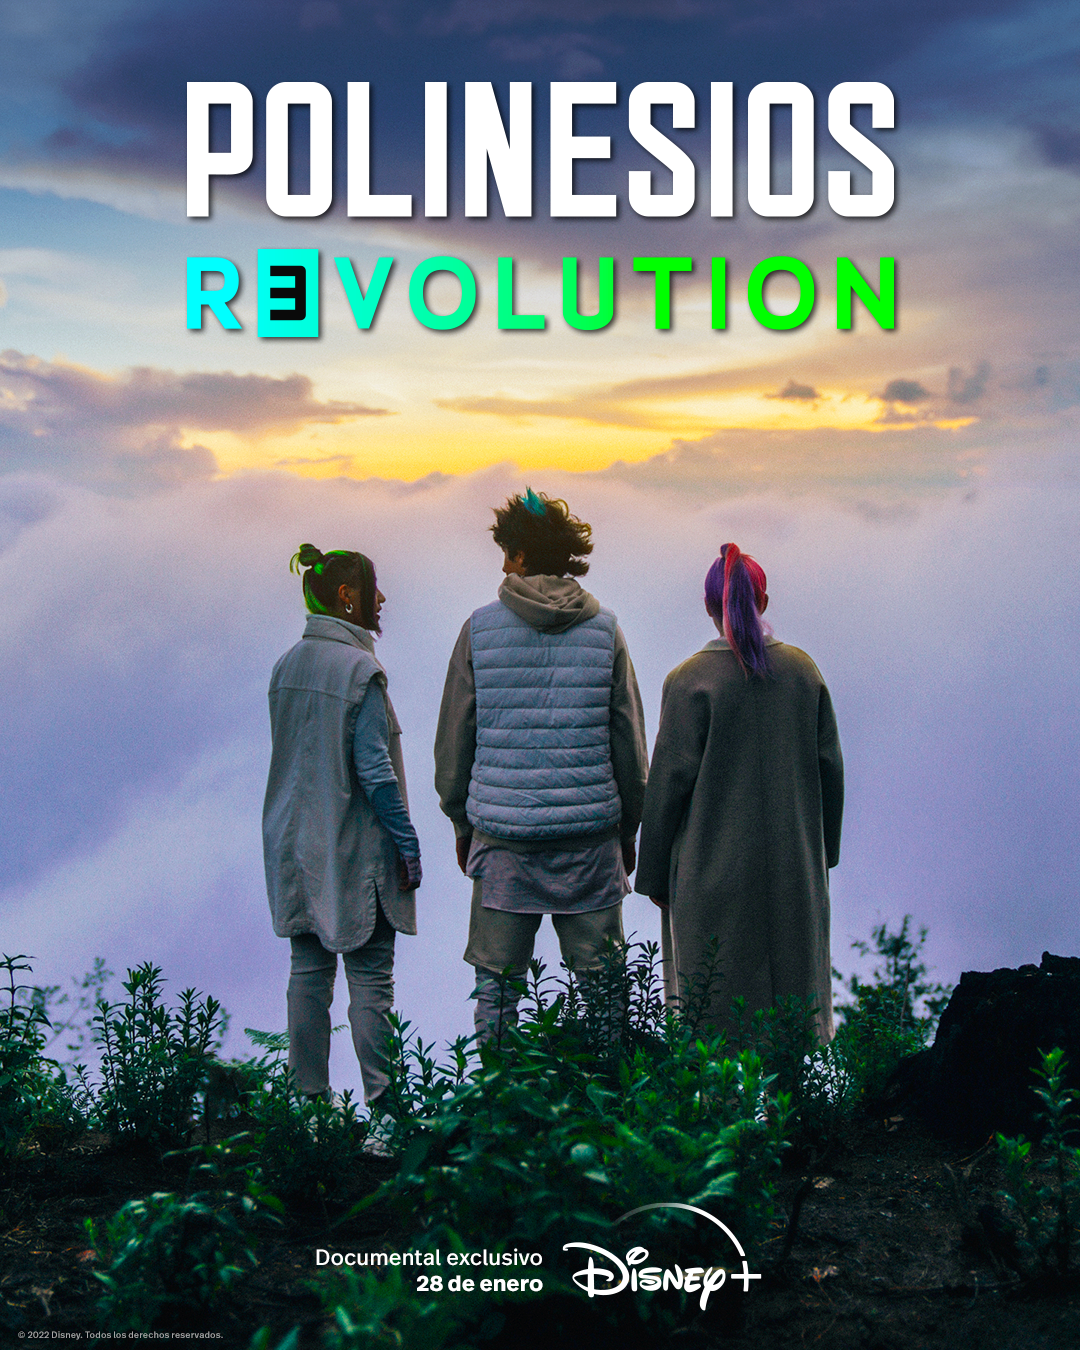 Lesslie, Karen y Rafa; son los protagonistas del documental titulado "Polinesios revolution". (Foto cortesía)